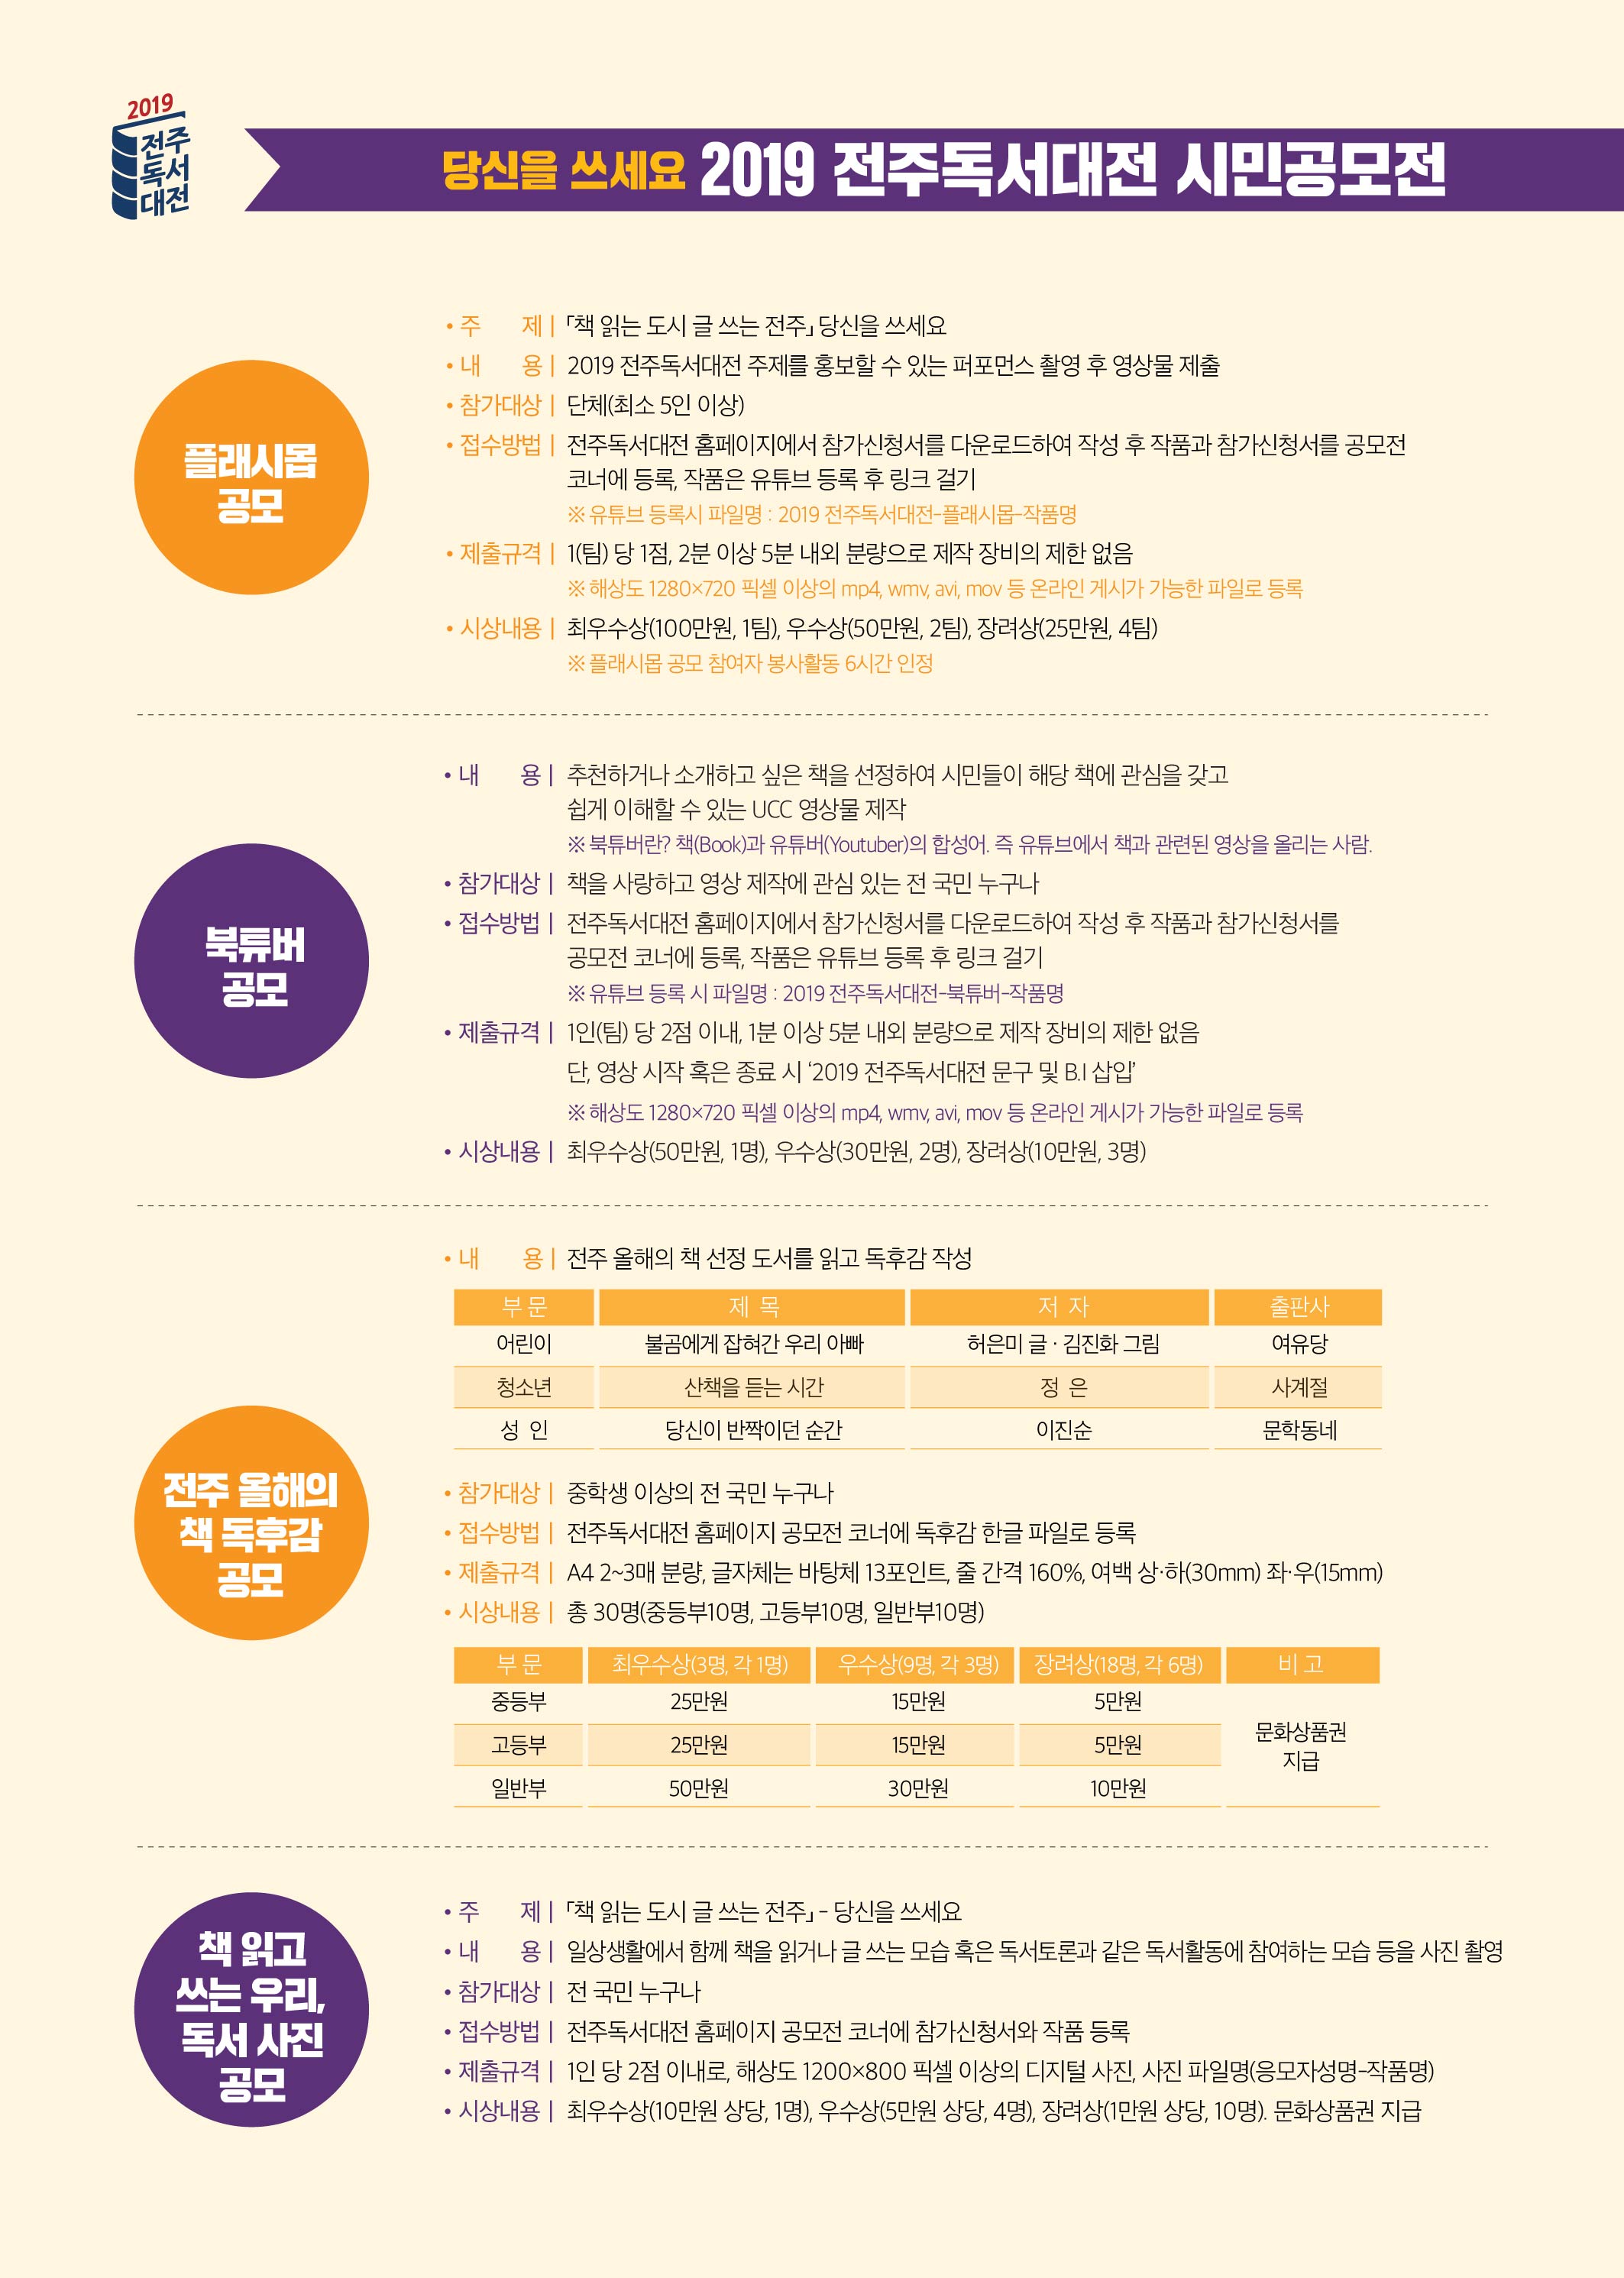  2019 전주독서대전 시민공모전 전단지(뒷면).jpg